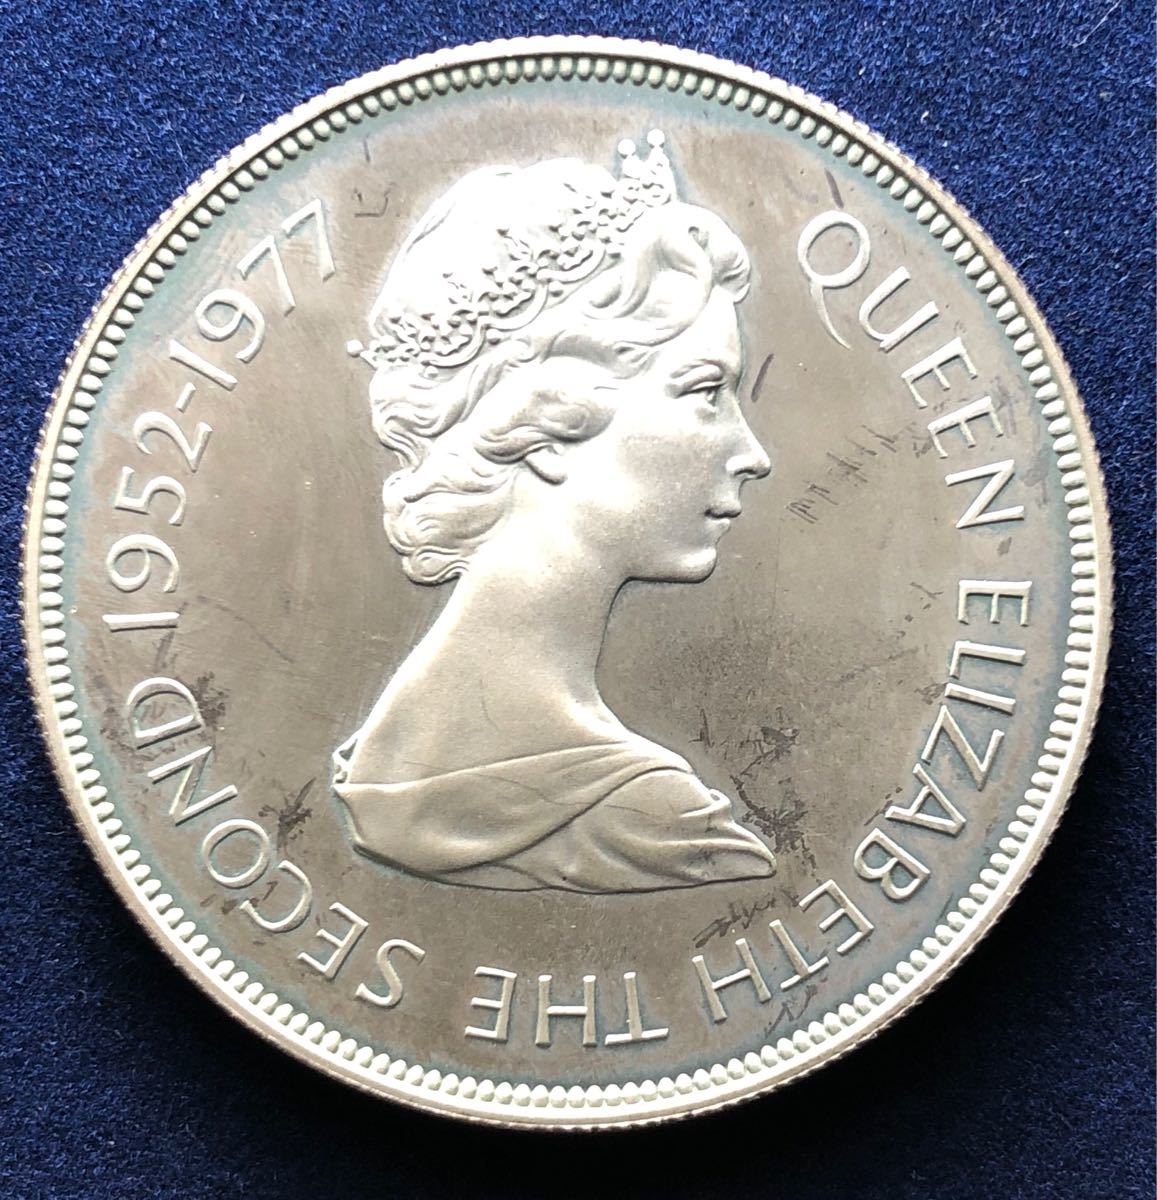  原文:イギリス領ジャージー島銀貨 ND1977年 25ペンス 28.3g エリザベス女王